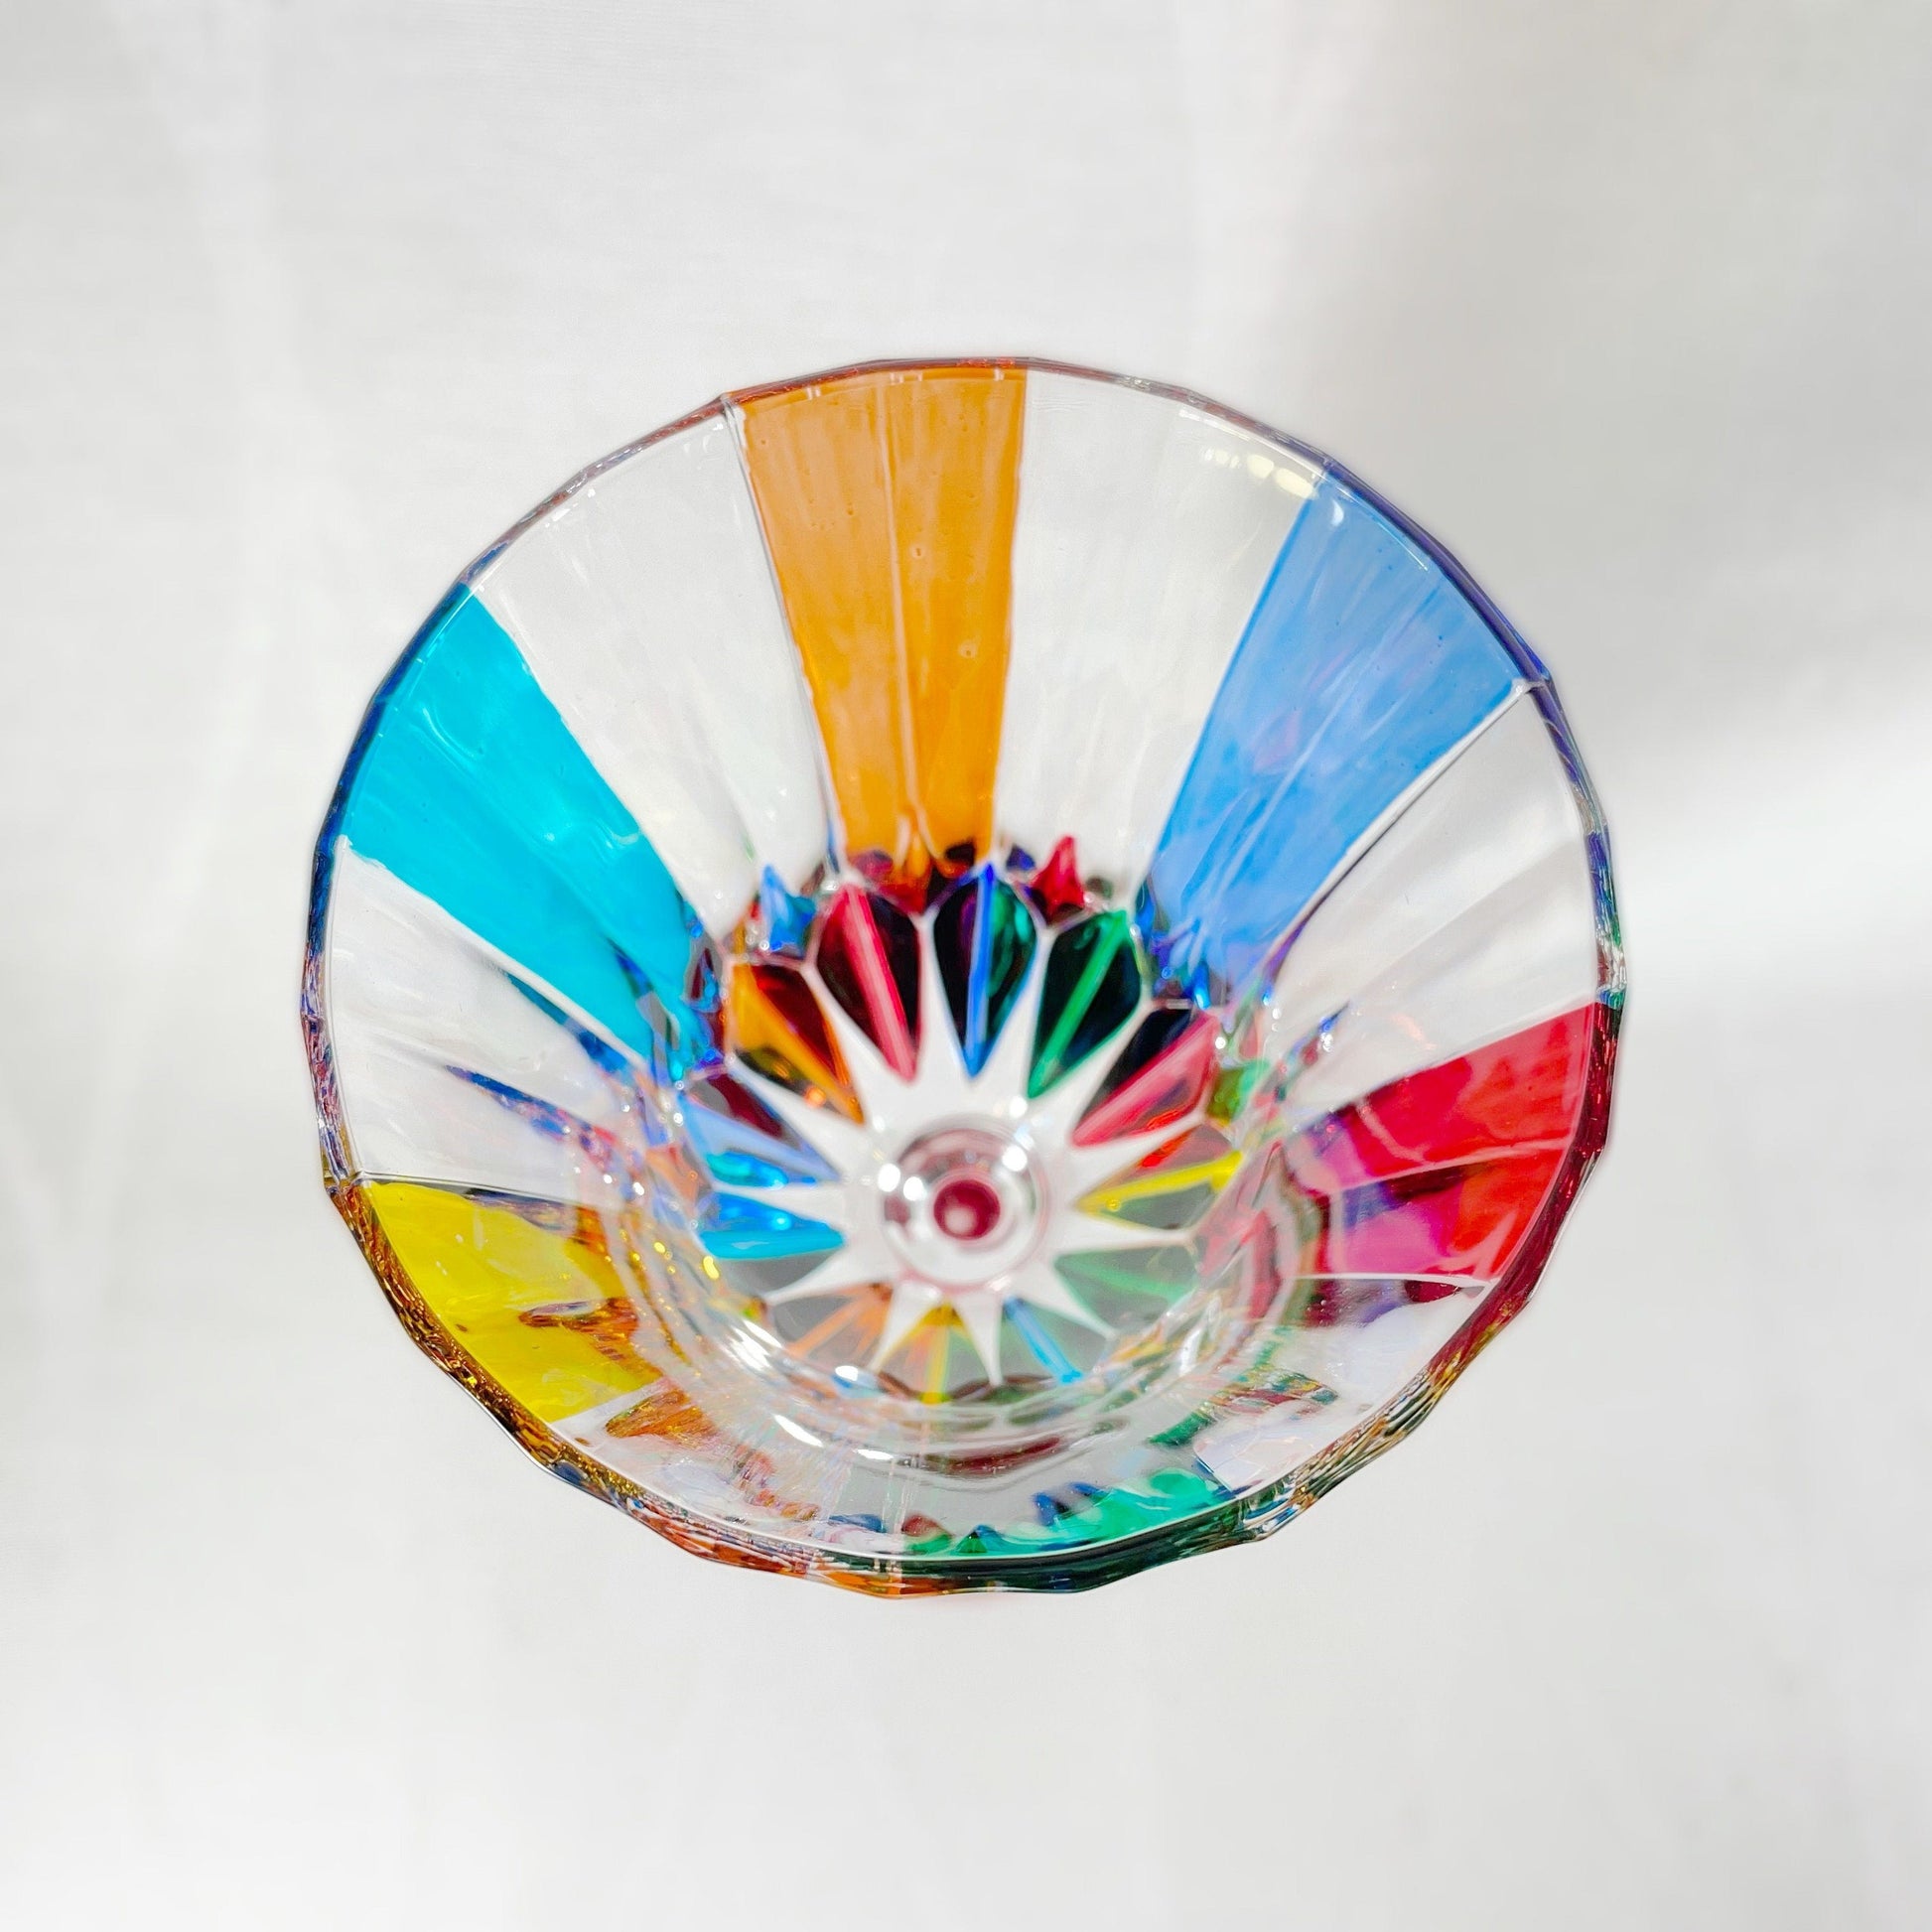 Venetian Glass Adagio Wine Glass - Handmade in Italy, Colorful Murano Glass